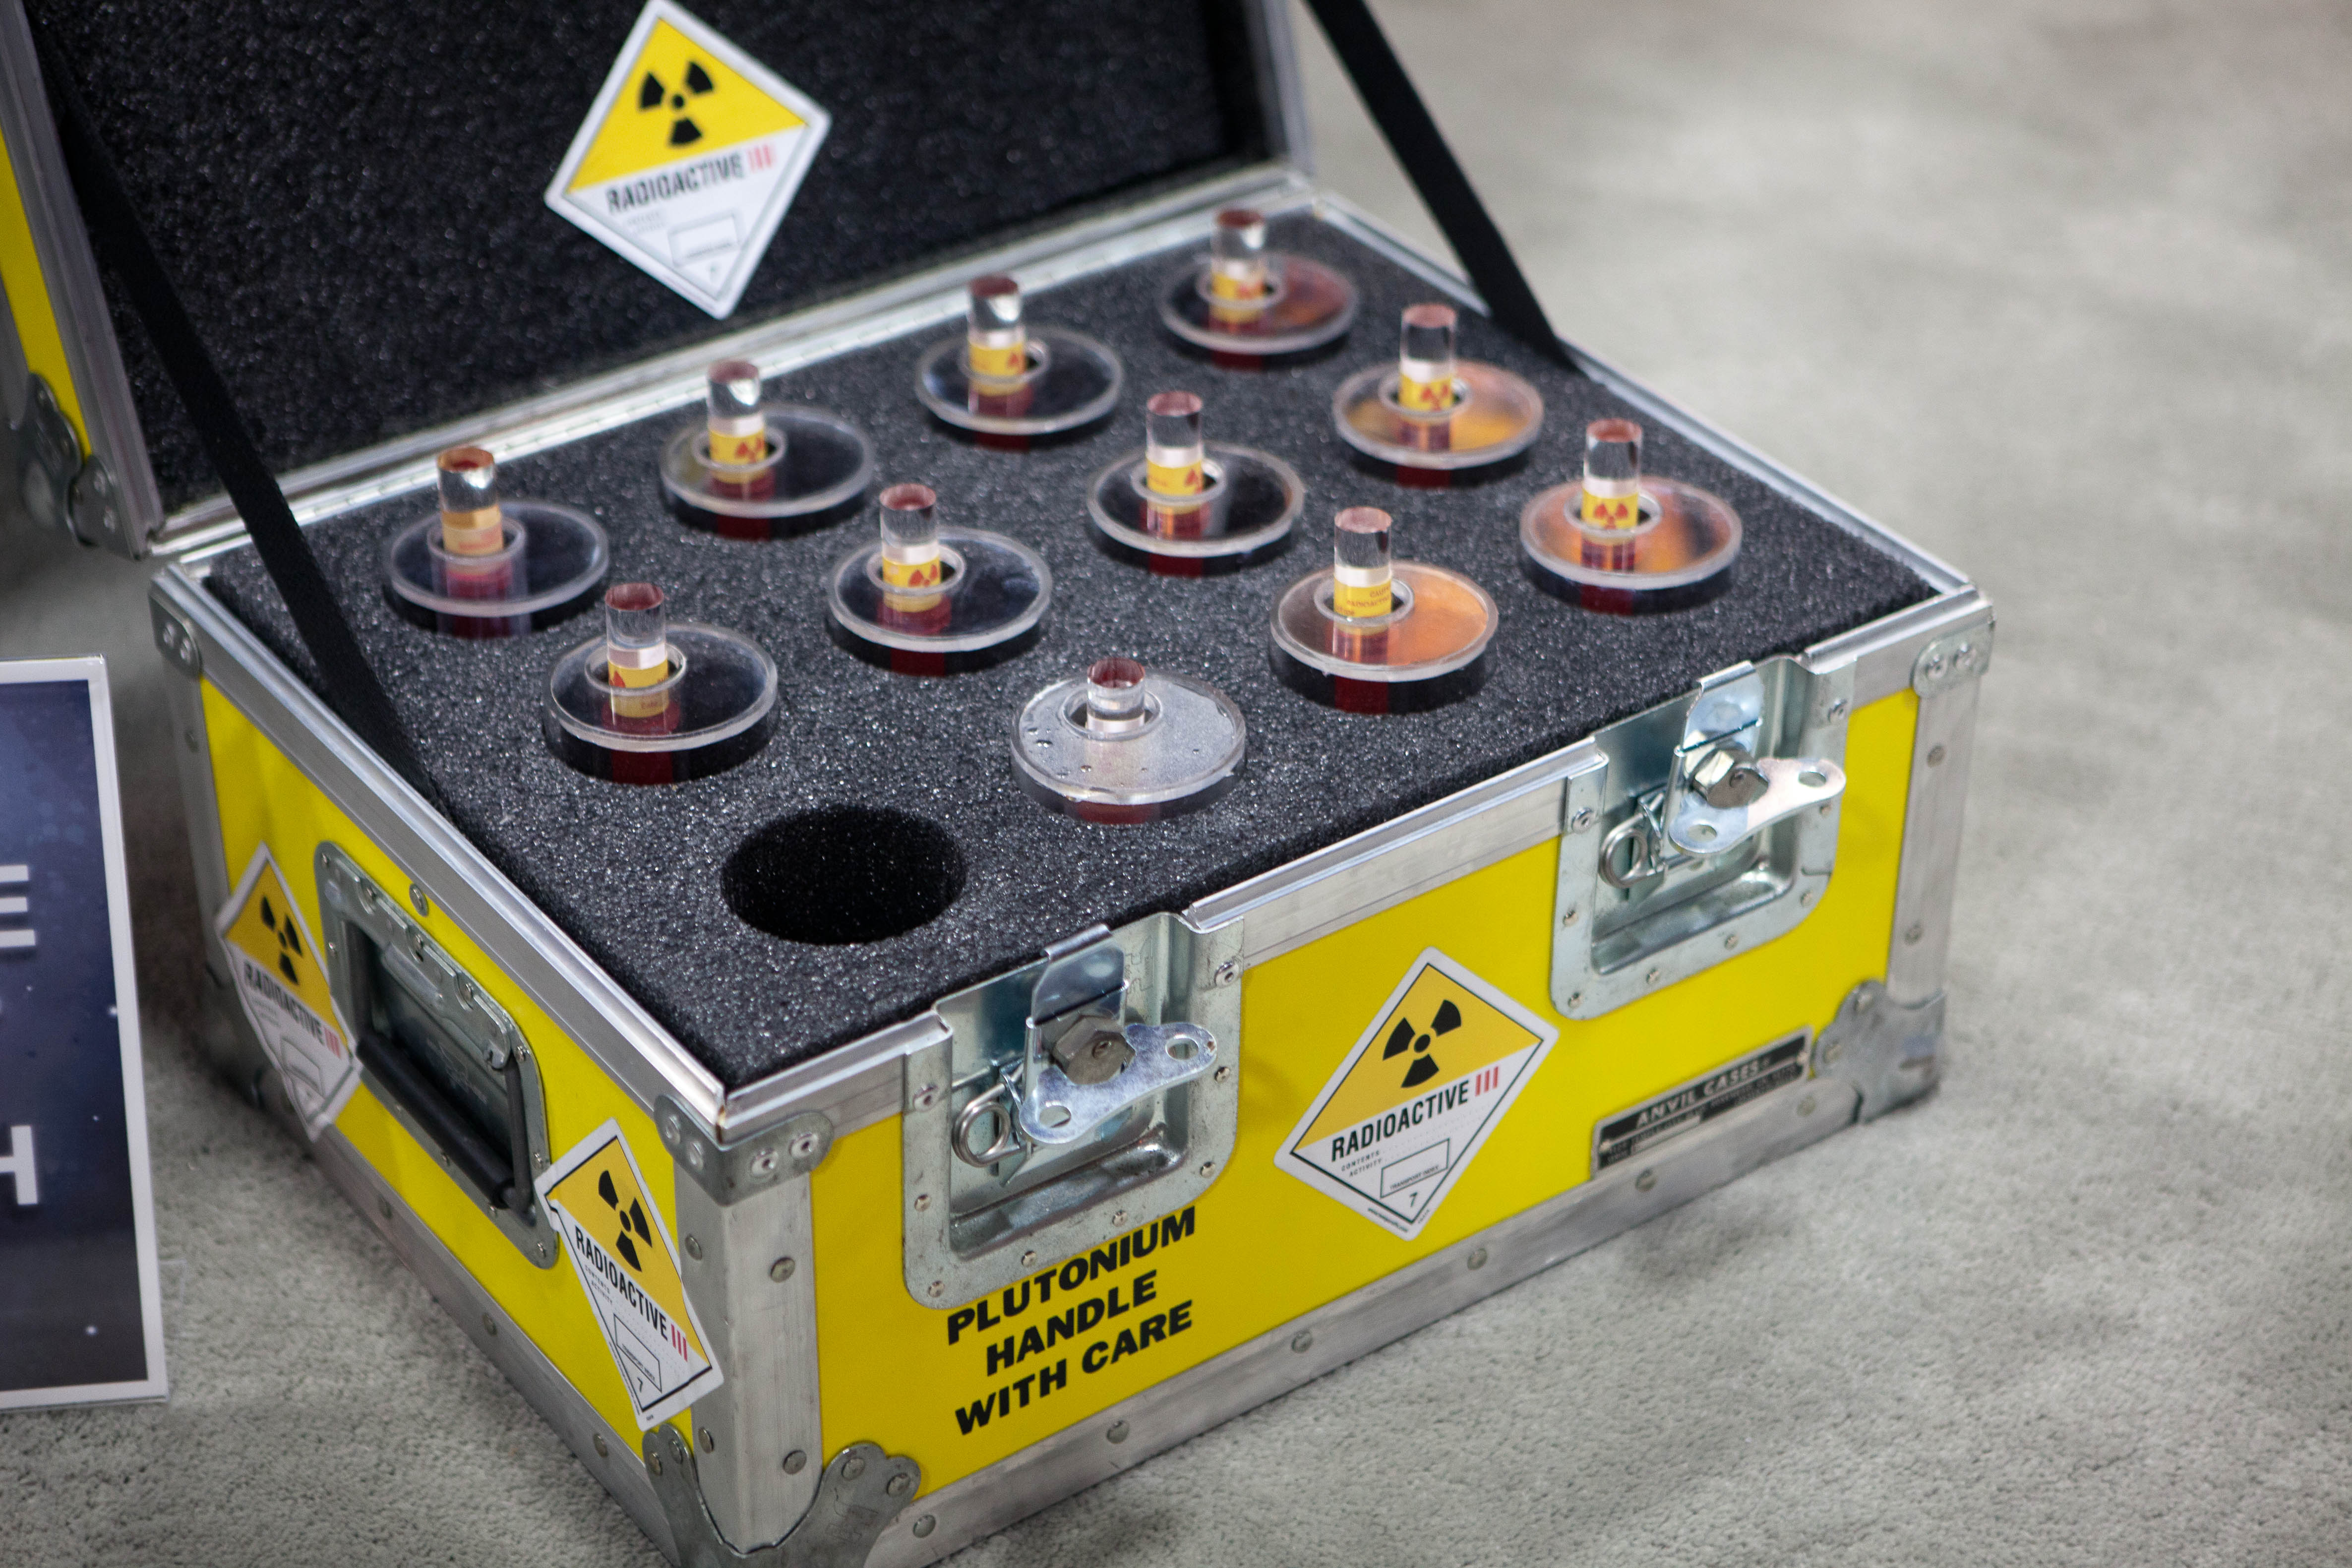 Le plutonium présente une radiotoxicité très élevée et doit être manipulé avec les plus grandes précautions. © Mooshuu, Flickr, CC by-sa 2.0 